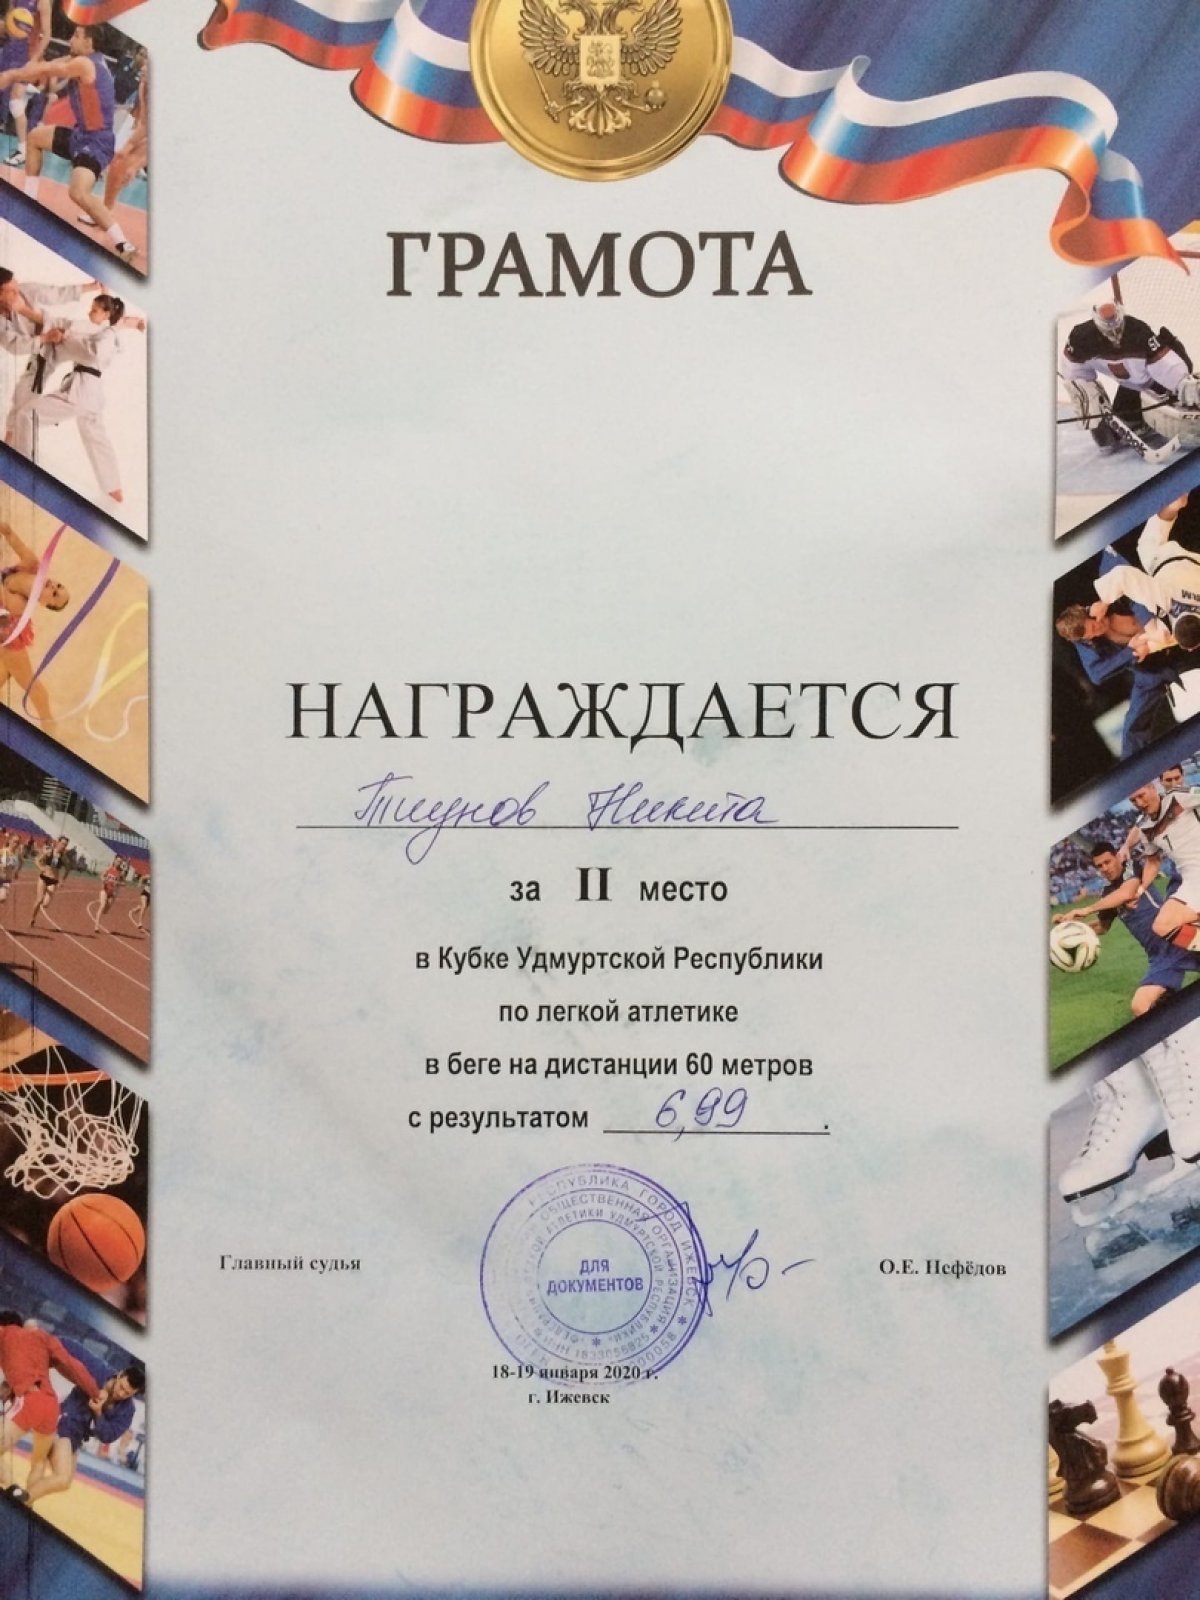 Тиунов Никита магистрант ФГБОУ ВО «ЧГИФК» стал призером в кубке Удмуртии по легкой атлетике!